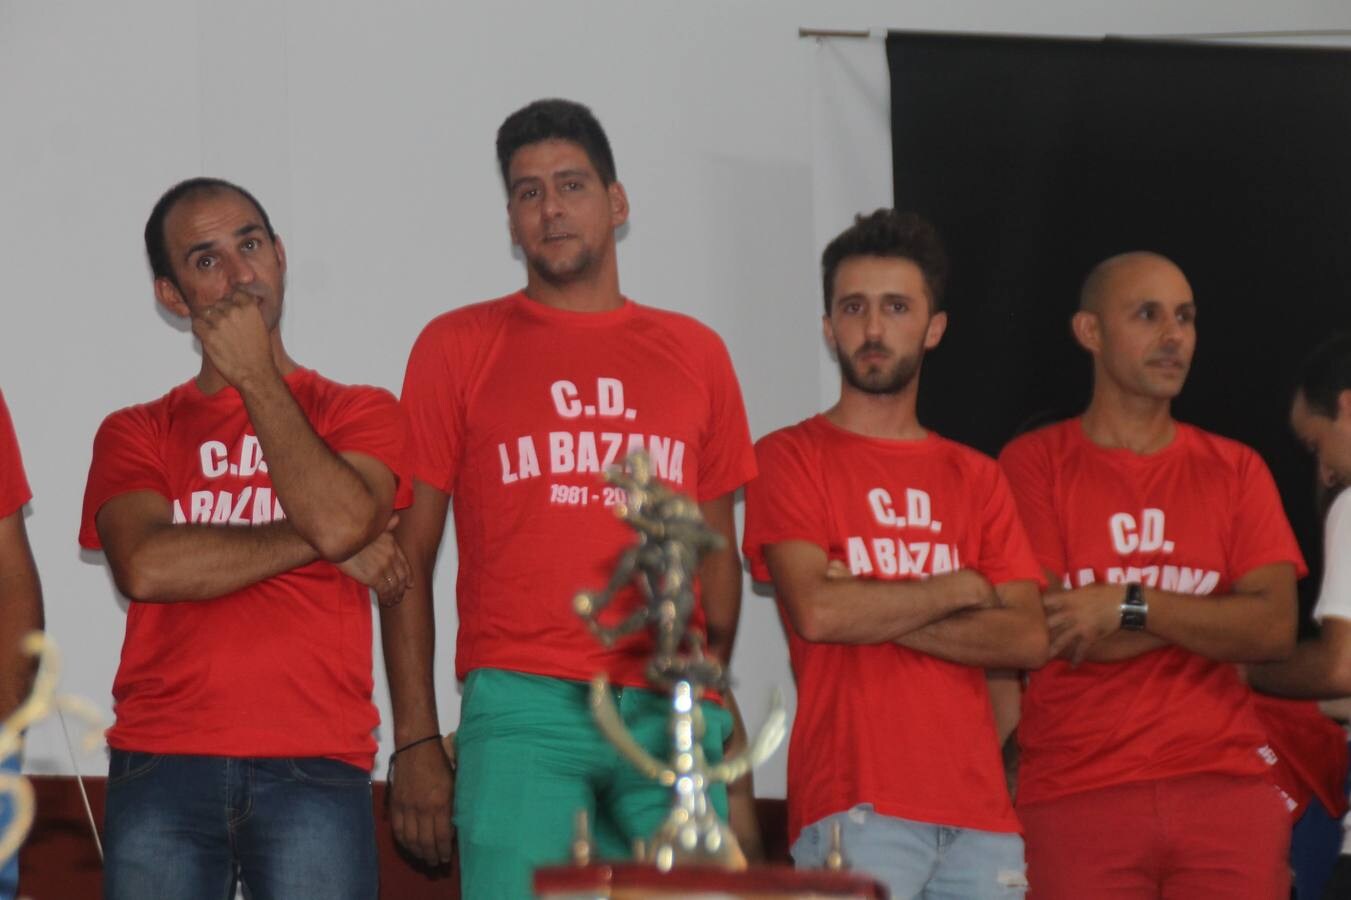 El Club Deportivo La Bazana, 'Un equipo, una familia'